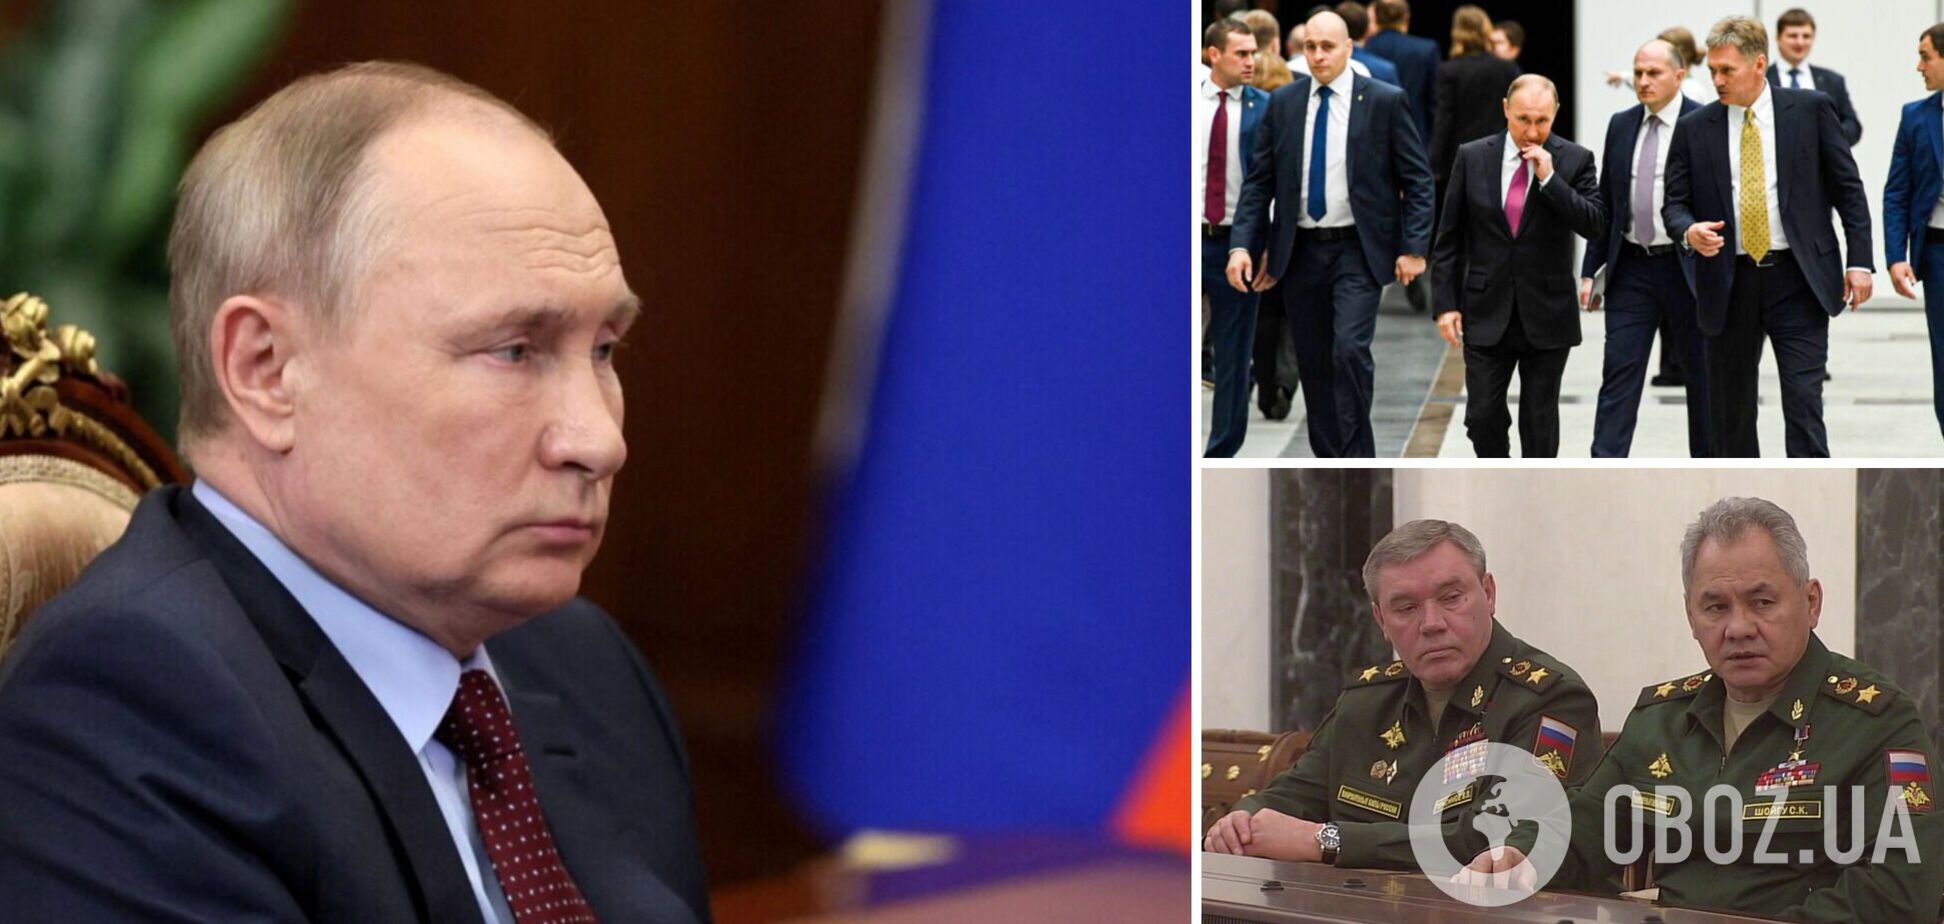 'Еще один аргумент': Мельник дал прогноз, могут ли россияне устроить теракт в кагебистской манере ко дню рождения Путина